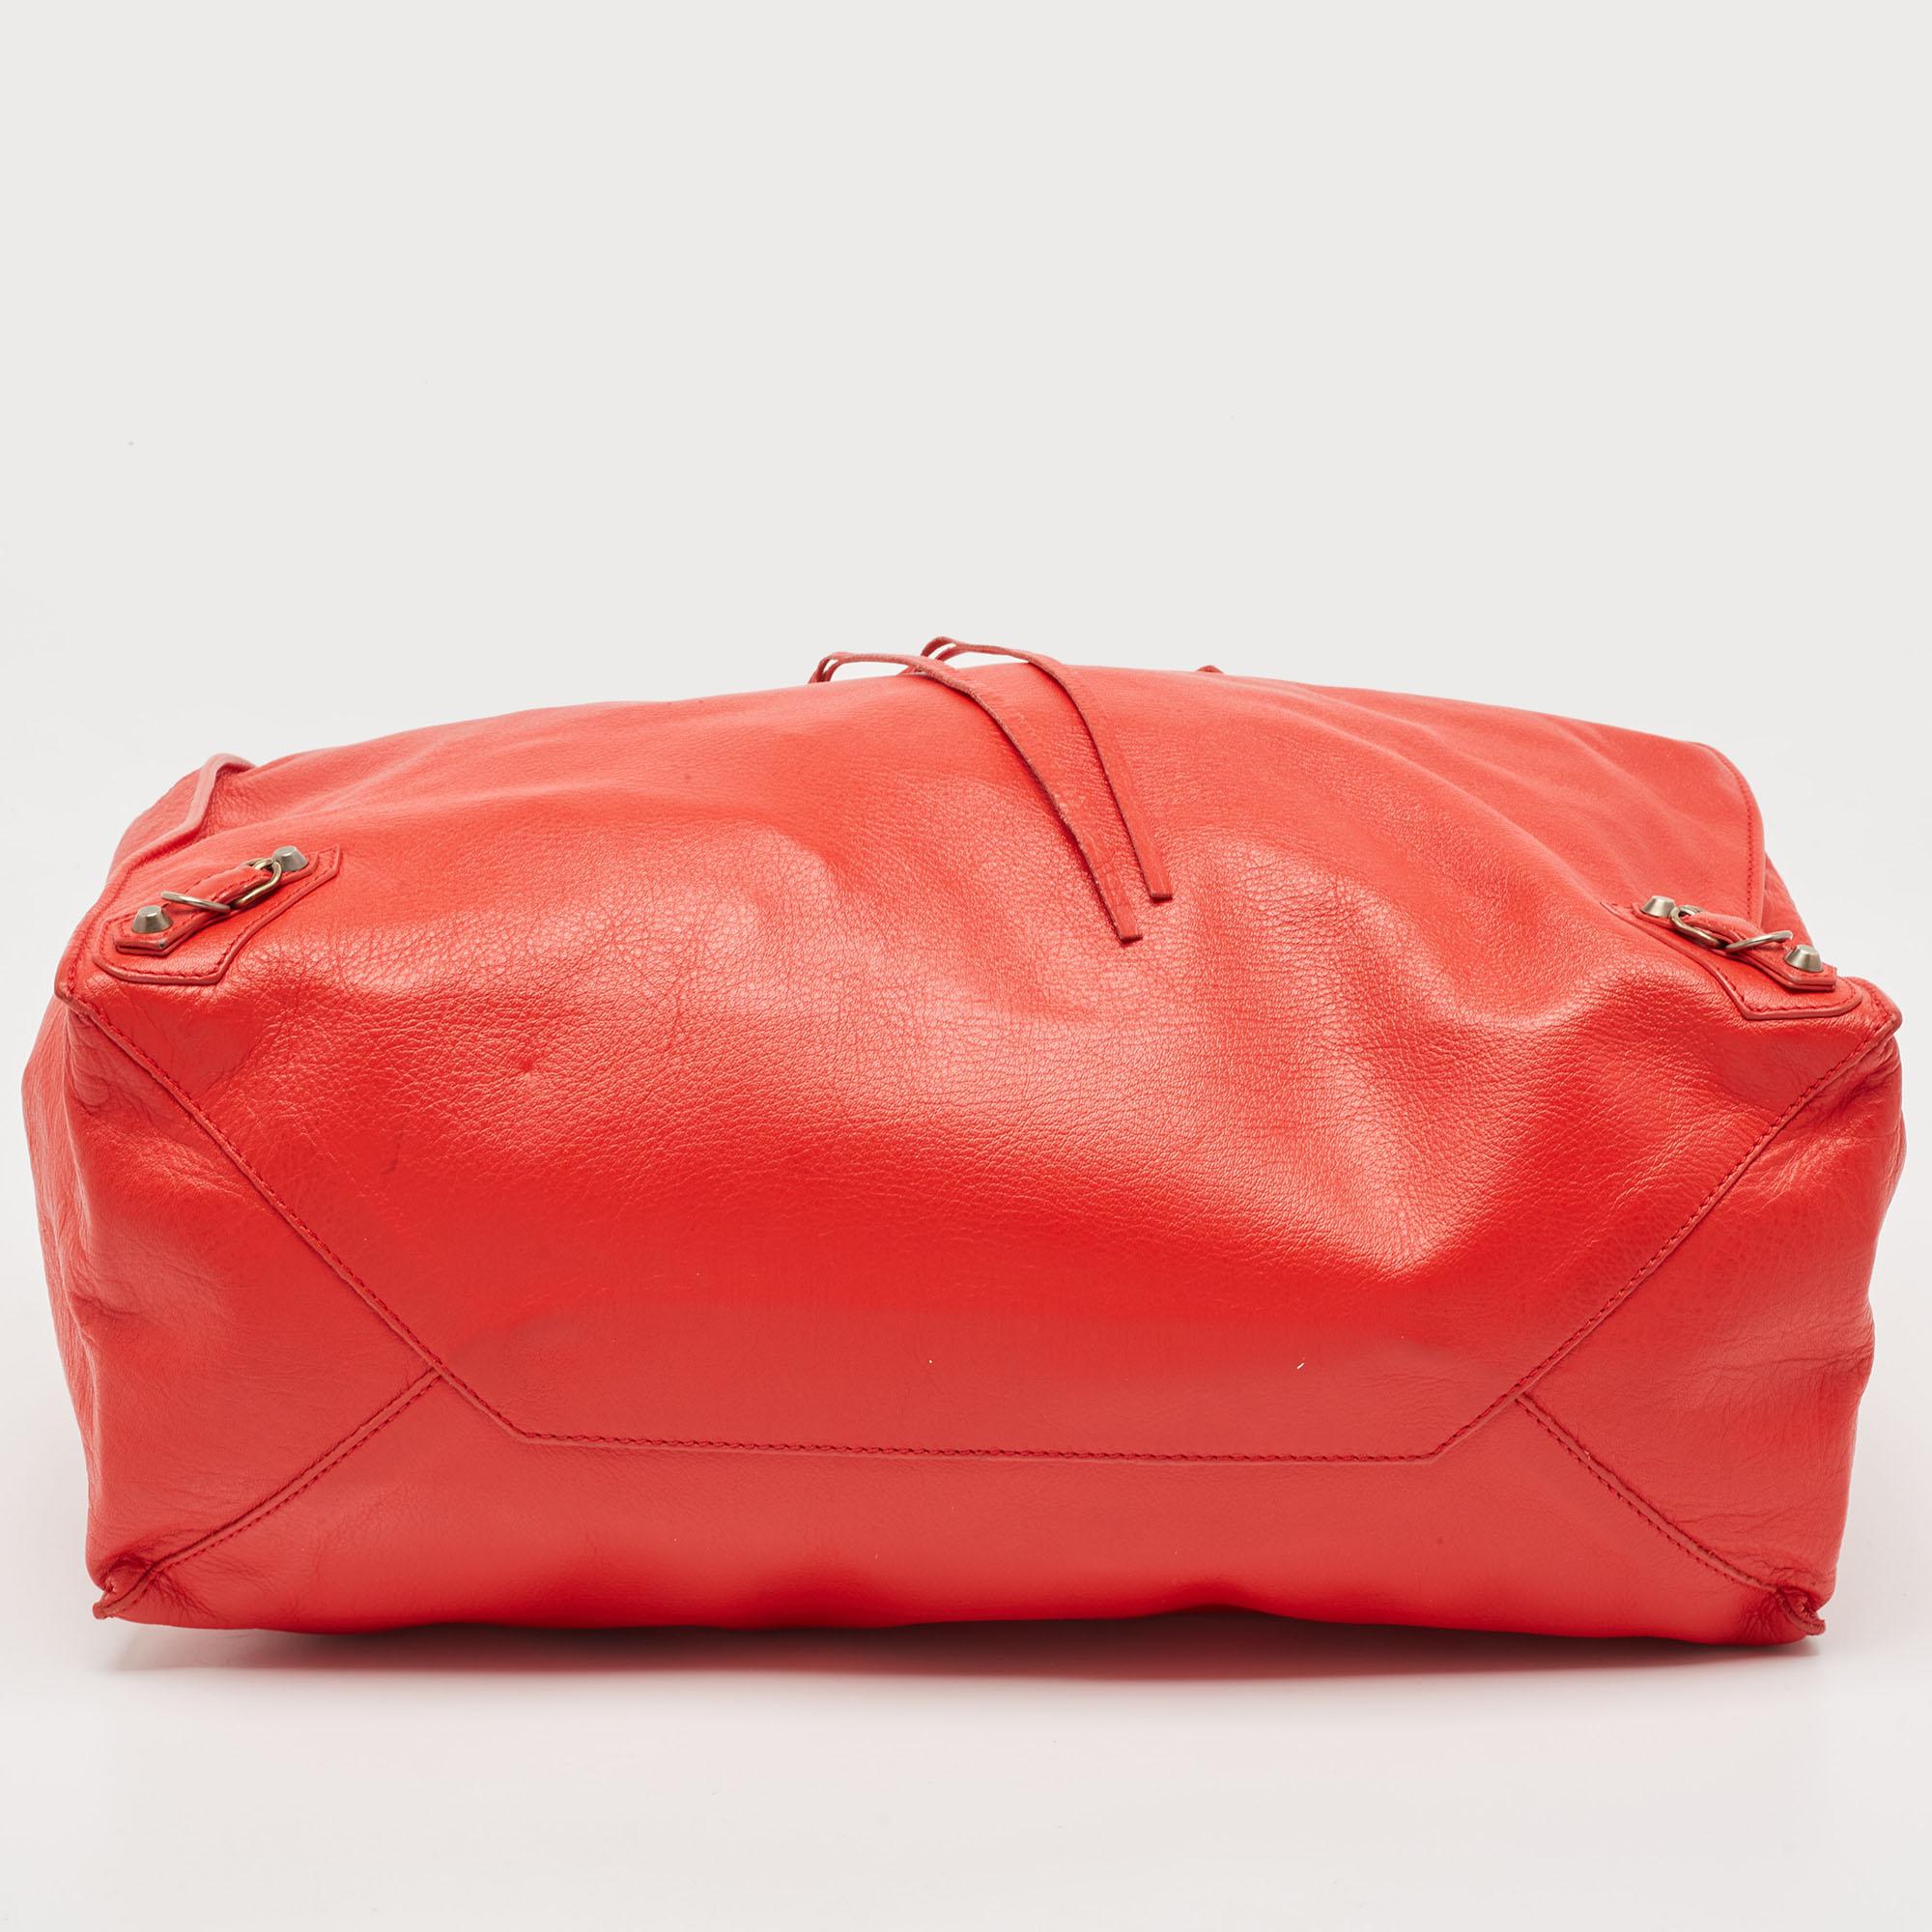 Balenciaga Red Leather Papier A4 Tote In Good Condition In Dubai, Al Qouz 2